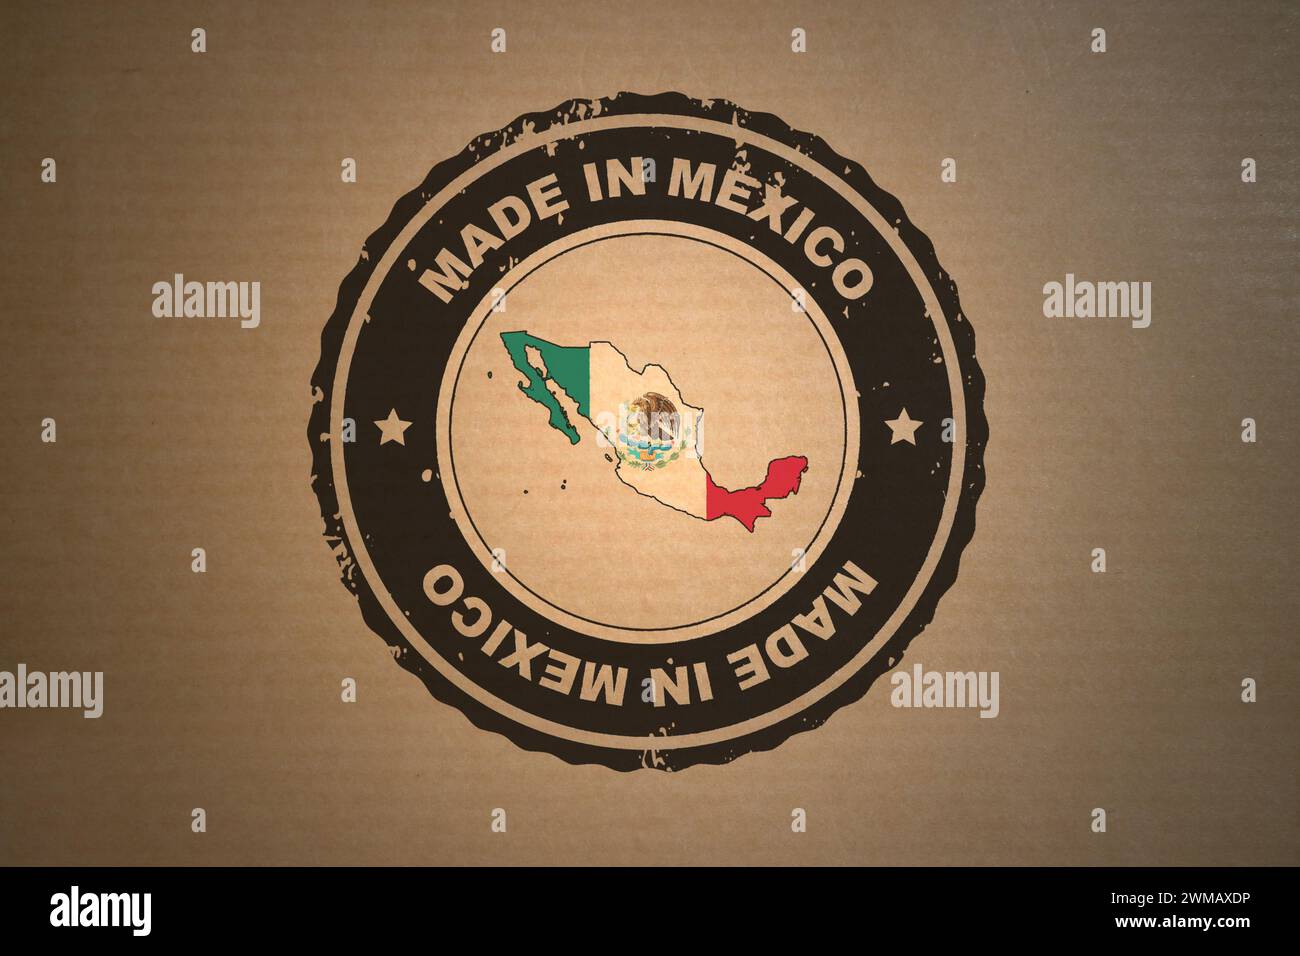 La carta marrone con al centro un francobollo in stile retrò prodotto in Messico include la mappa e la bandiera del Messico. Foto Stock